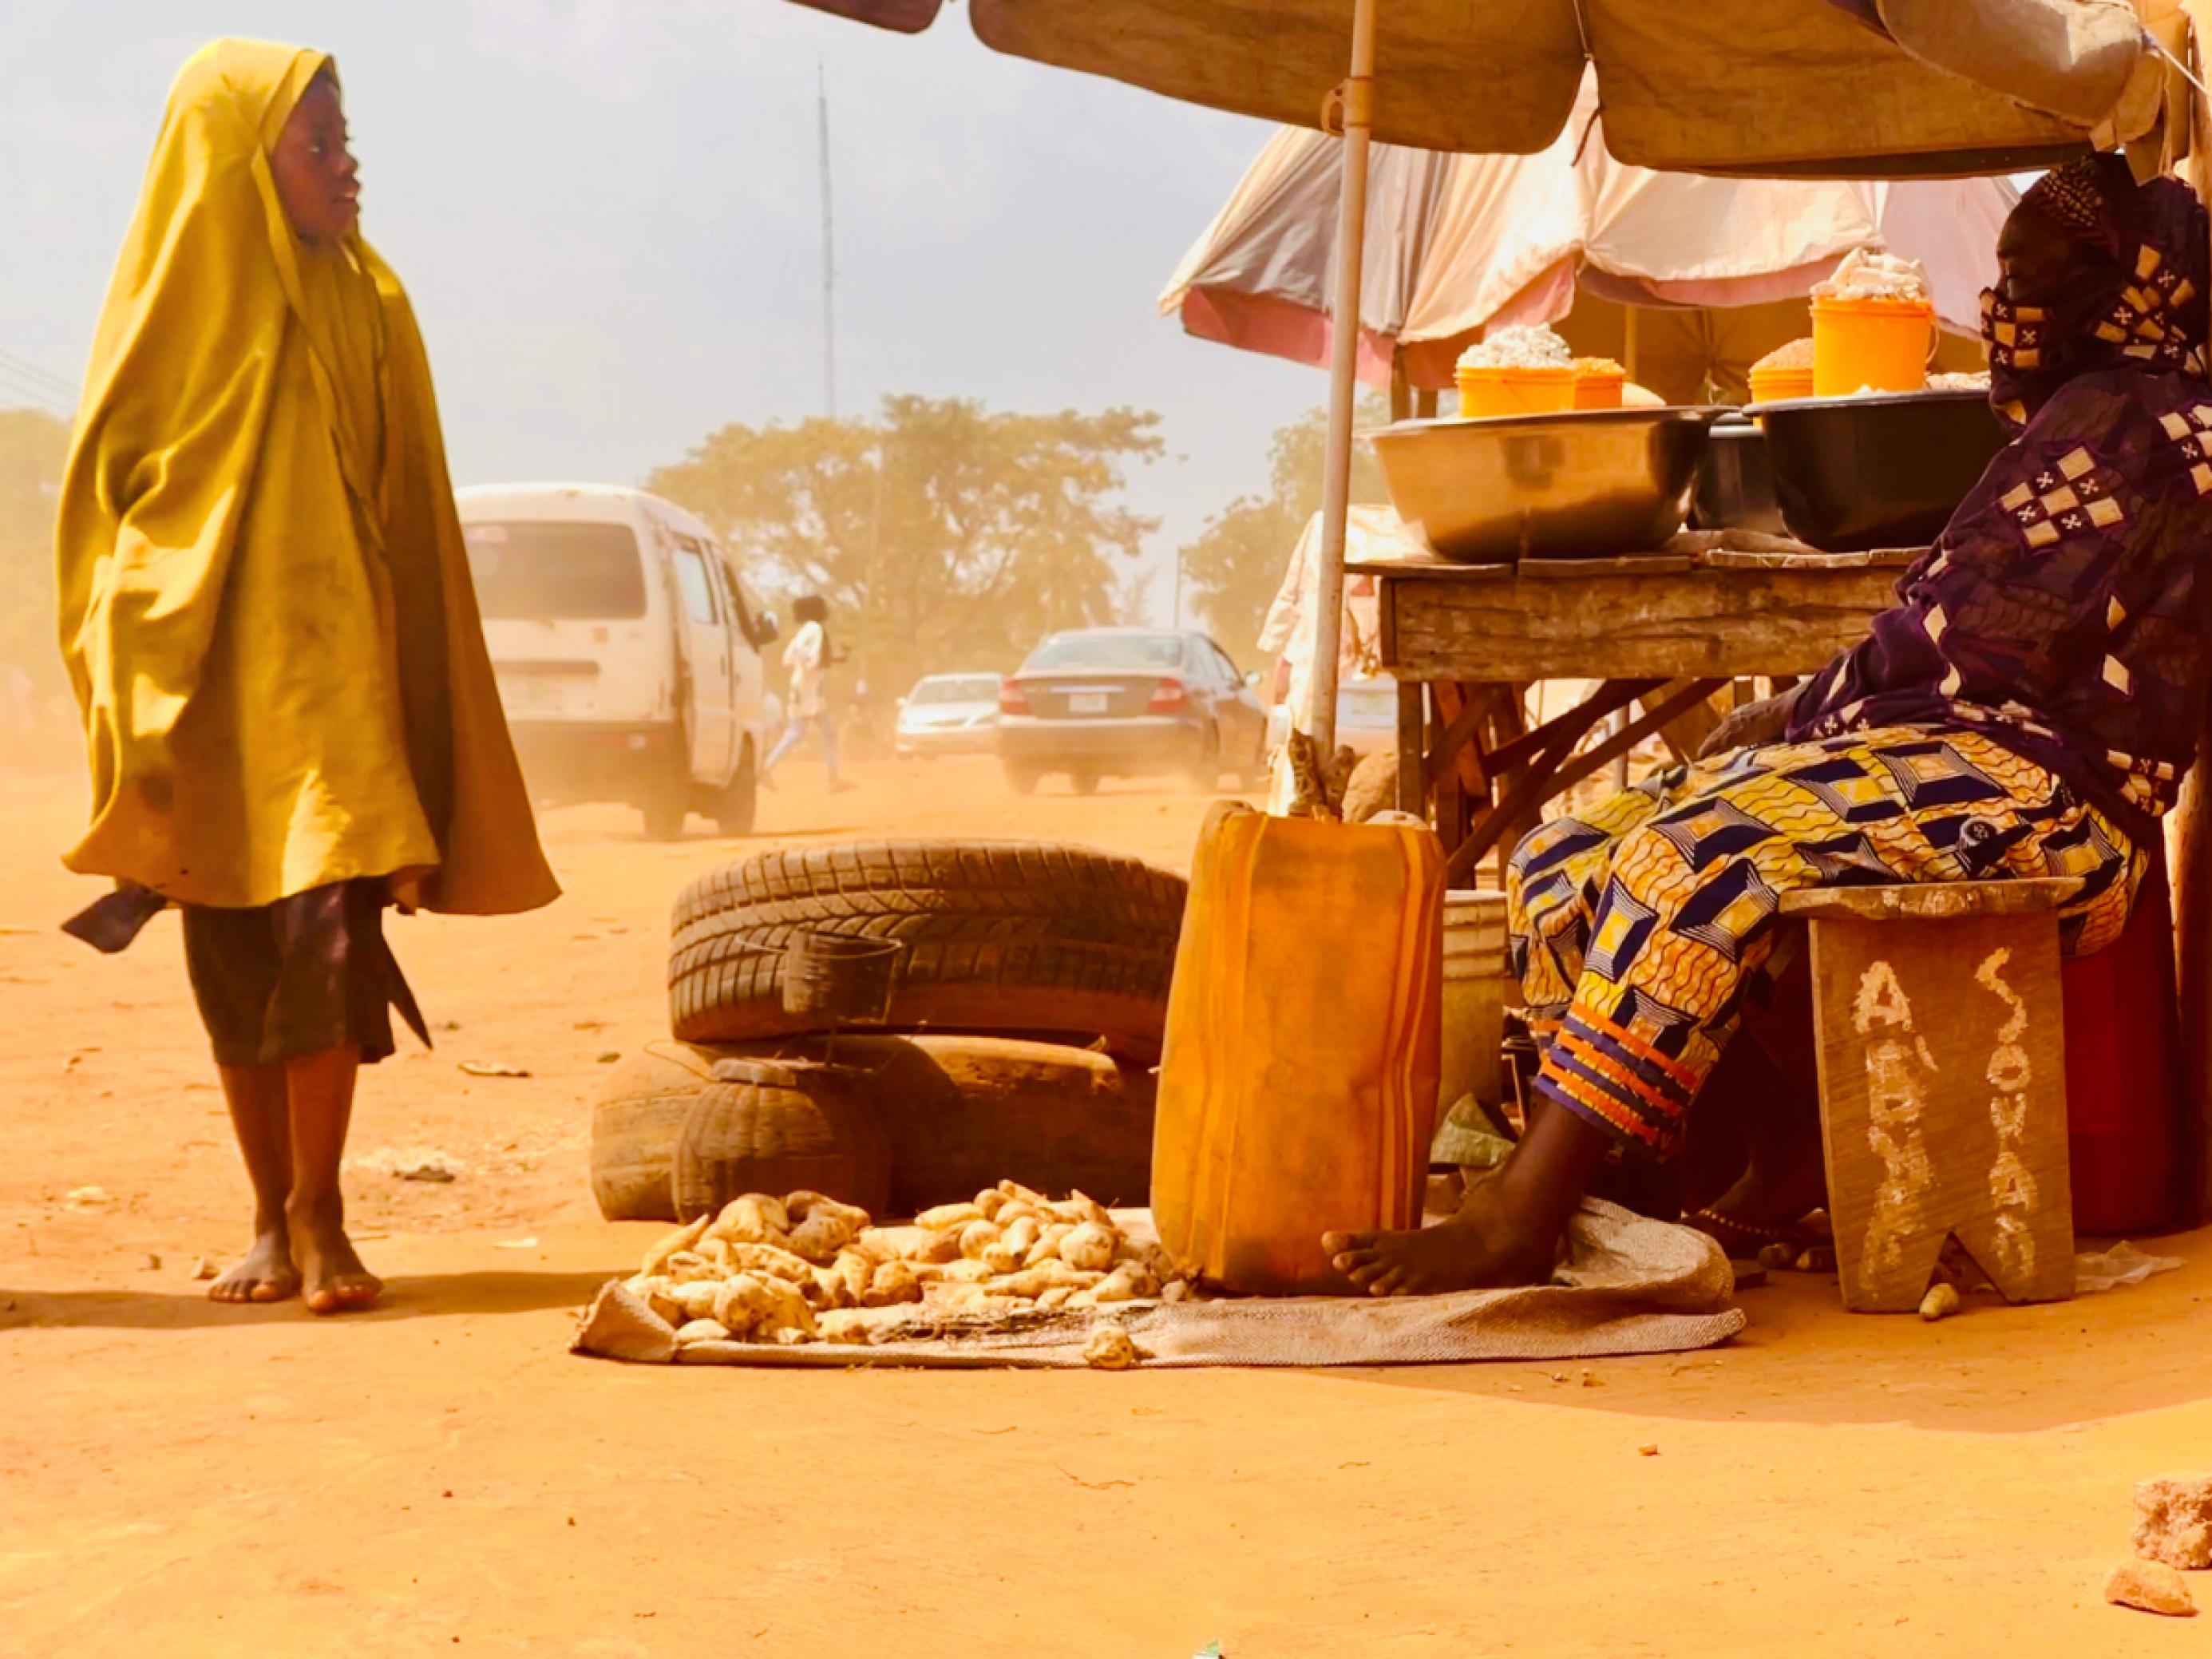 Ein Mädchen geht an einer Frau vorbei, die an einem staubigen Straßenrand in Kwara, Nigeria, vor kleinen Schüsseln sitzt und ihre Ernte zum Verkauf anbietet.